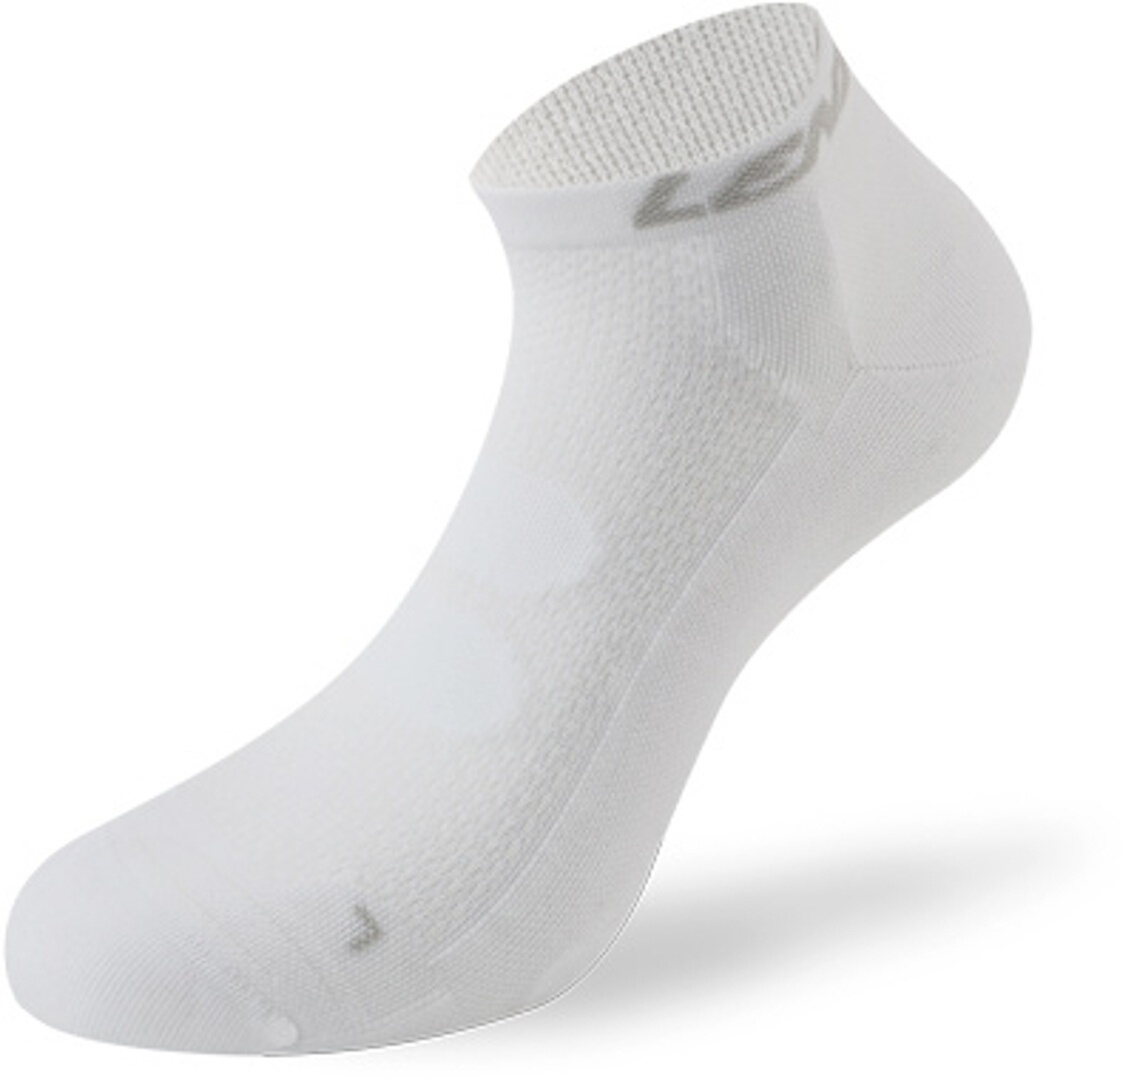 Lenz 5.0 Short Kompression Socken, weiss, Größe 42 43 44